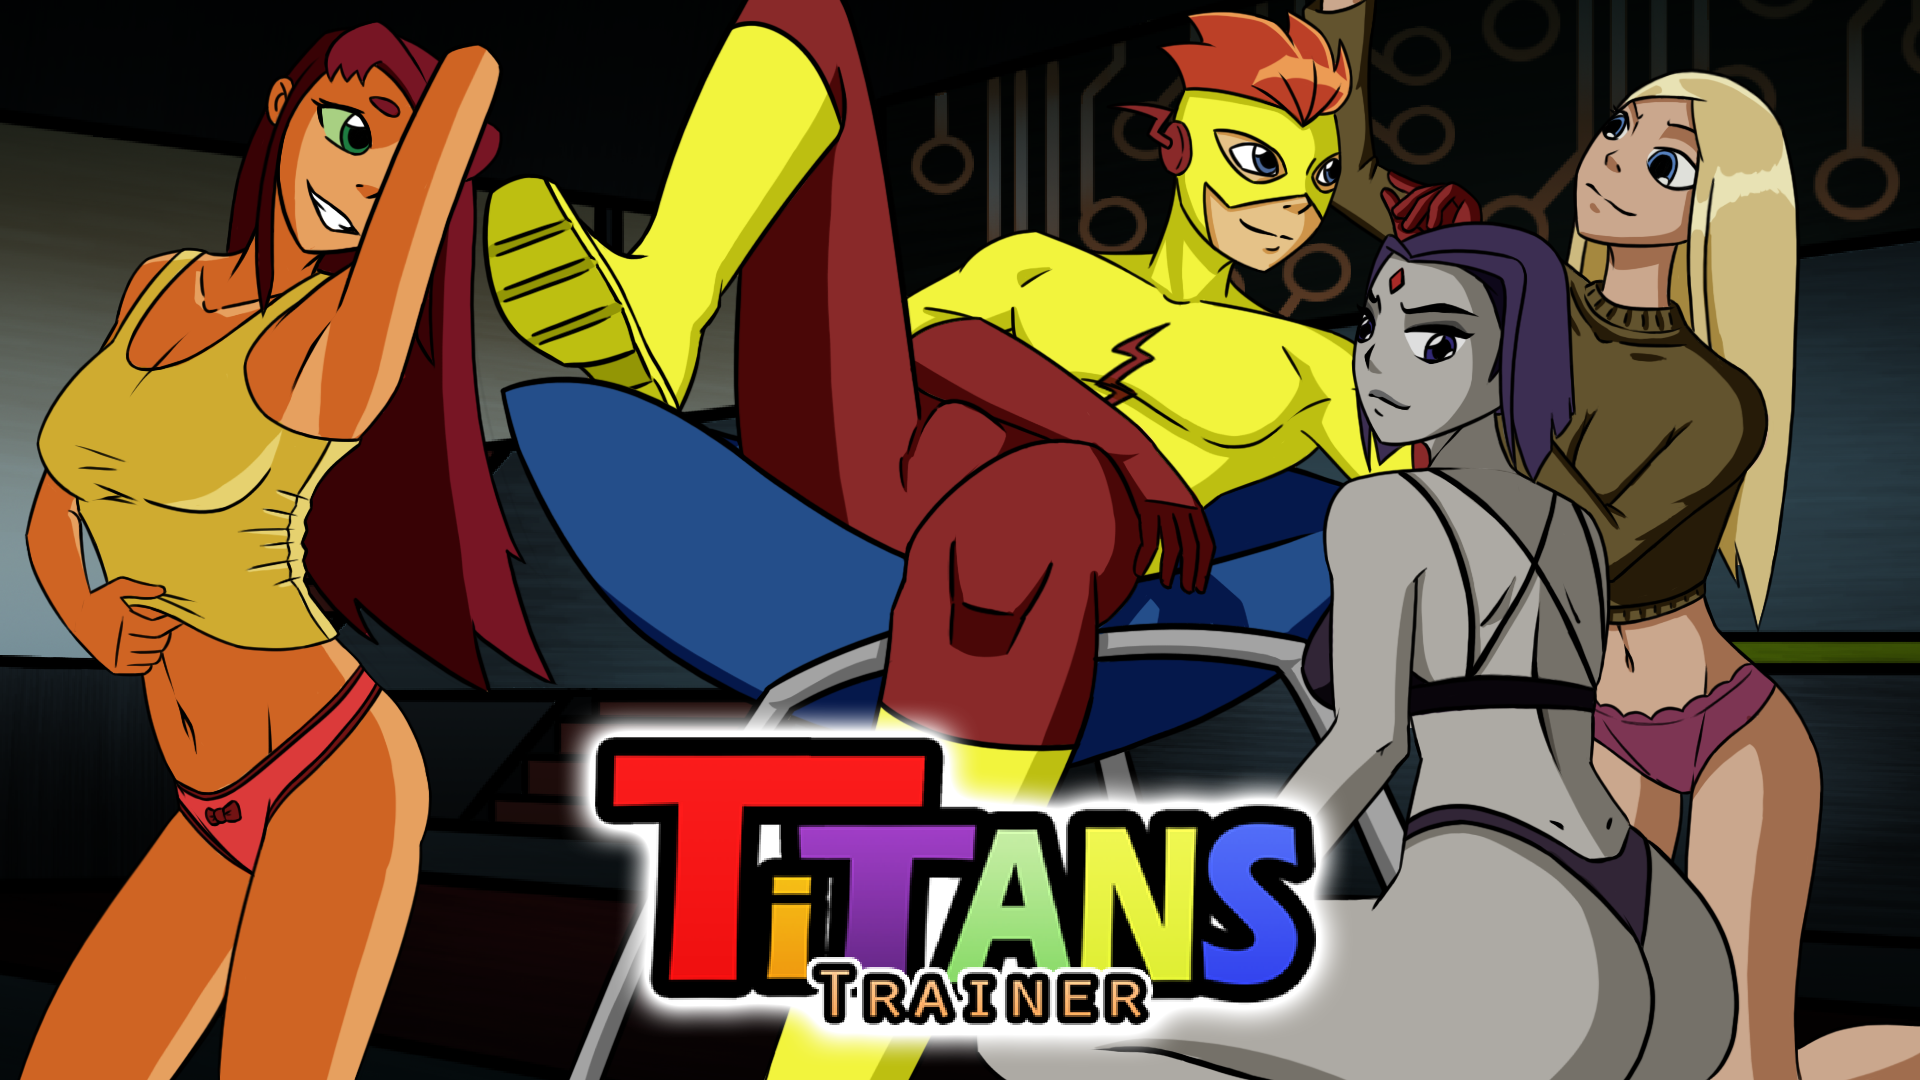 Team titan trainer